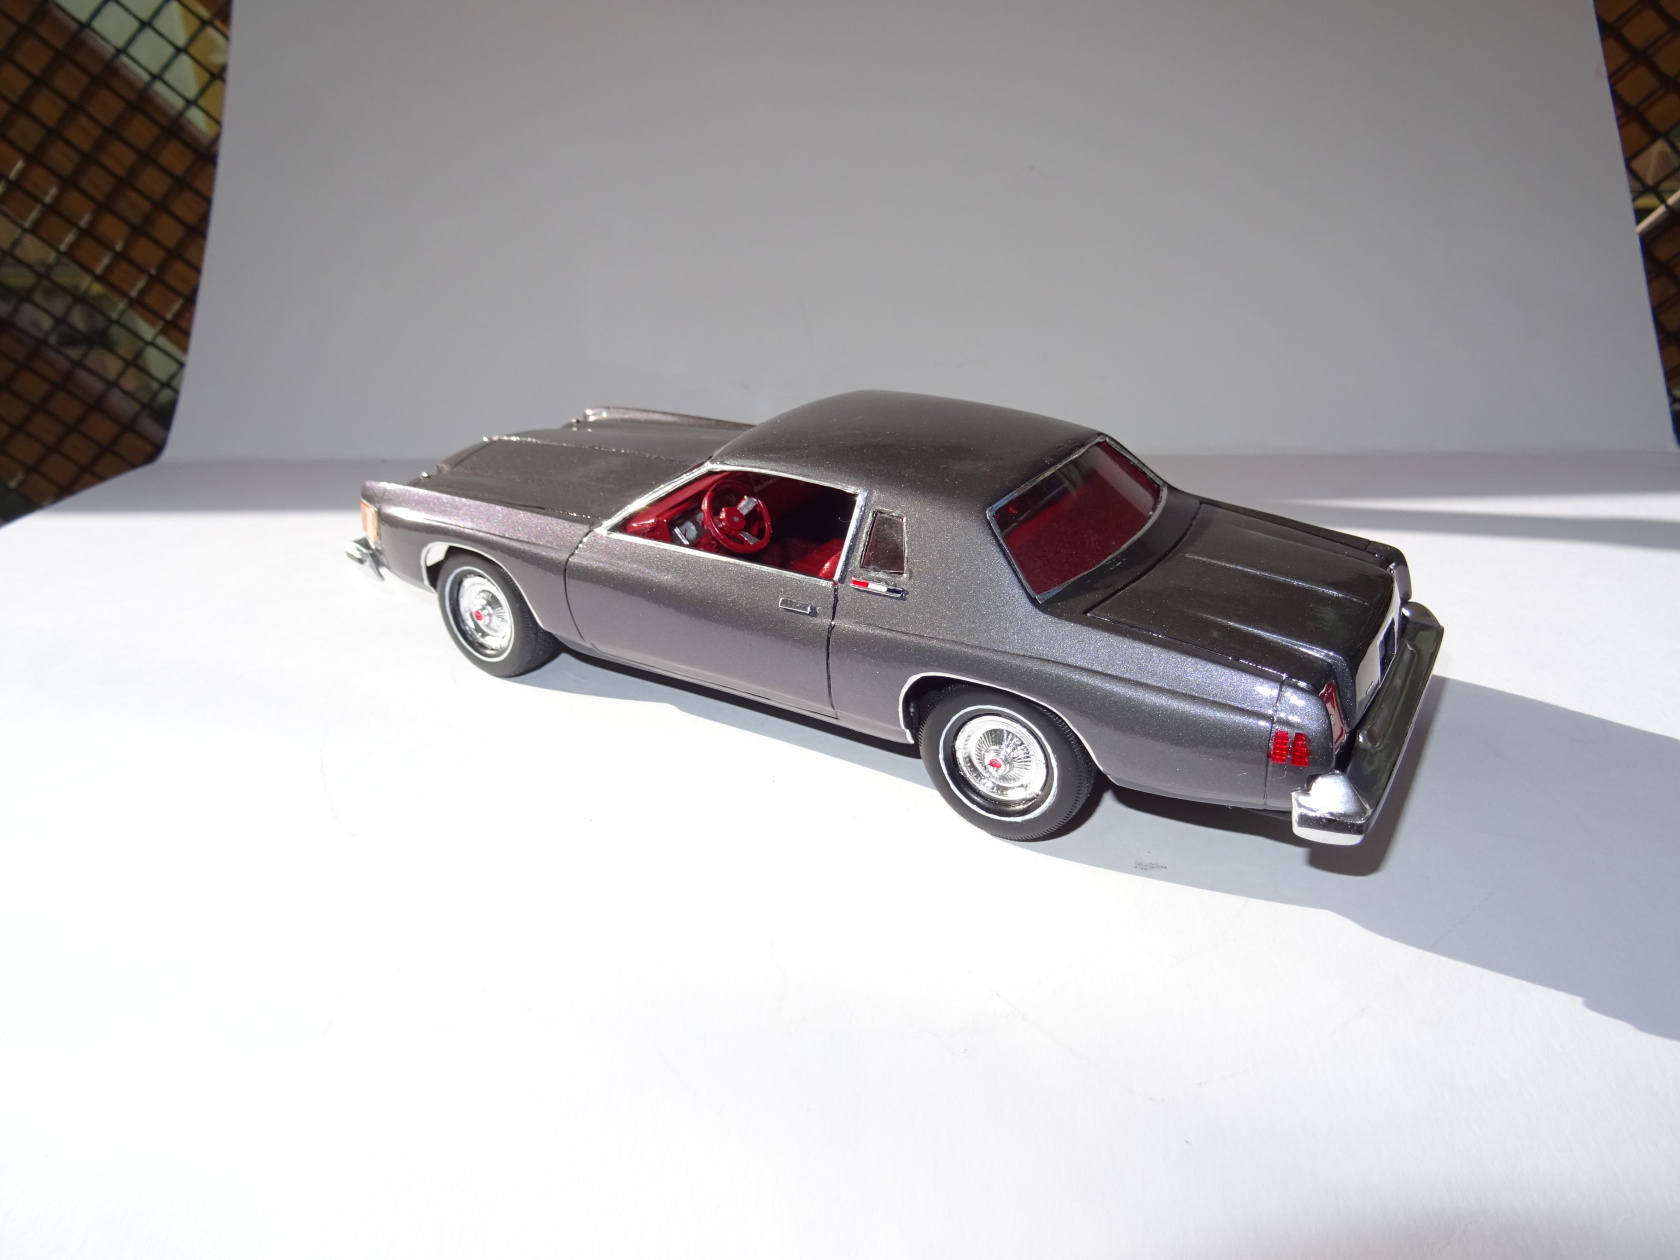 79 Chrysler 300 - Model Cars - Model Cars Magazine Forum